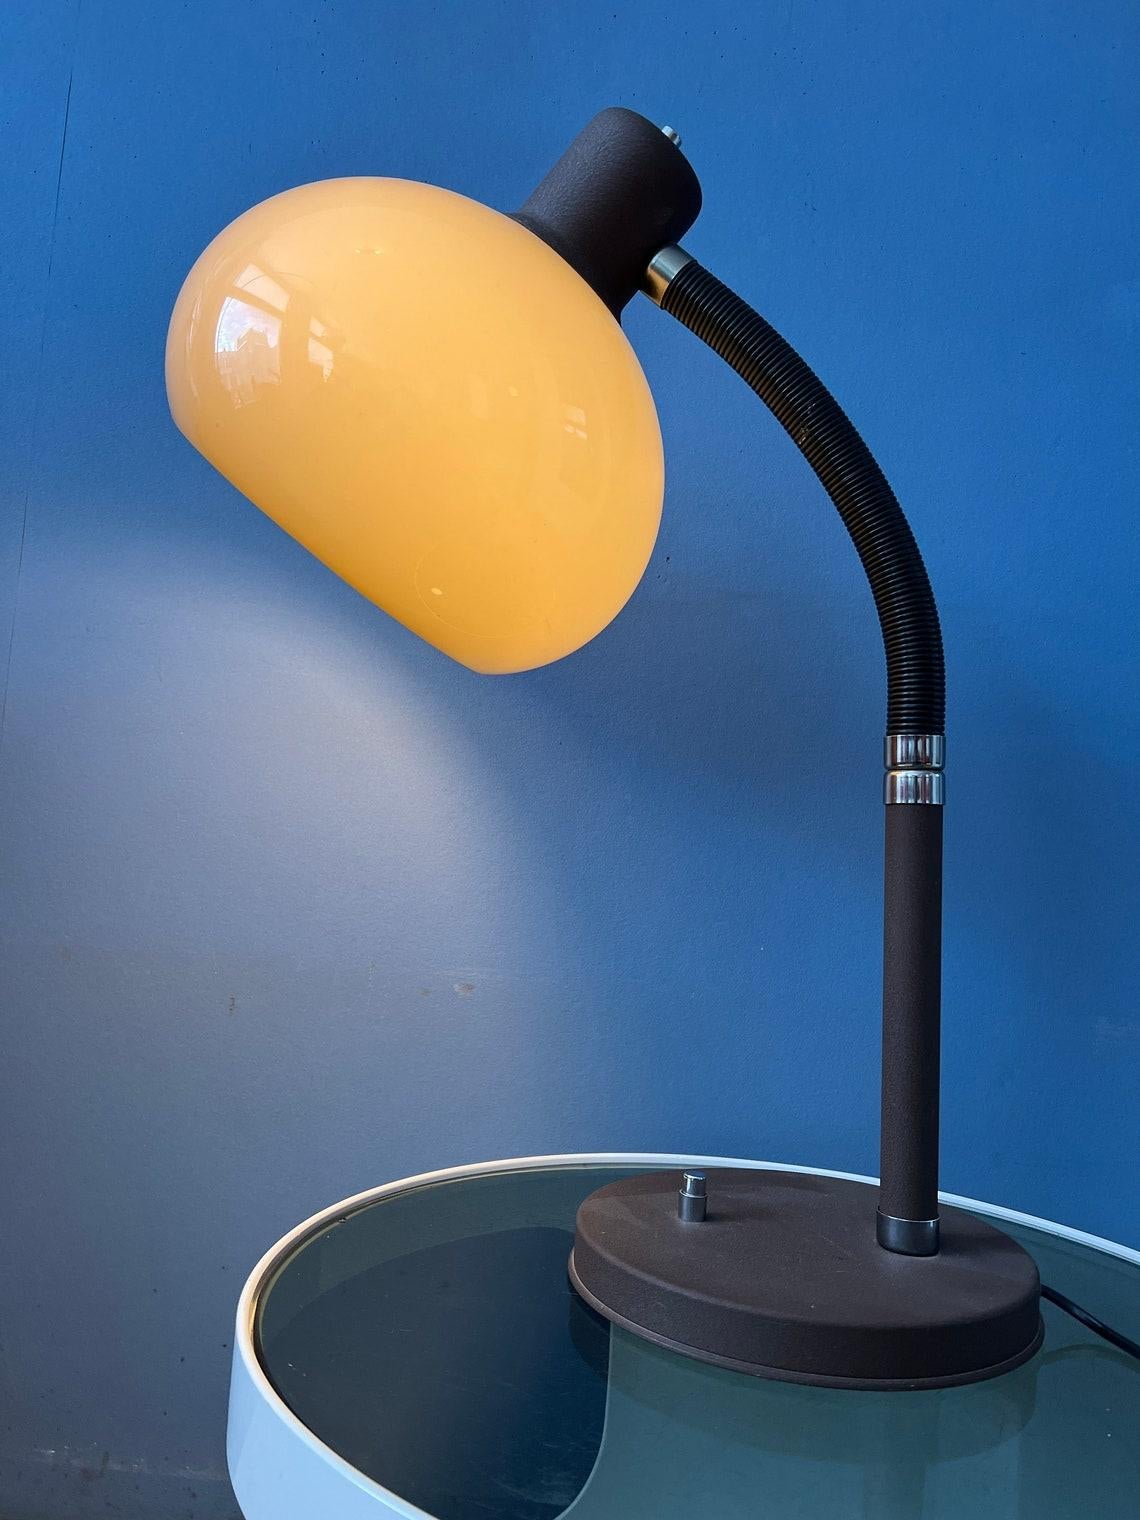 Lampe à poser en forme de champignon, très flexible, par Herda. L'abat-jour acrylique en forme de champignon produit une lumière chaude. Ce modèle est doté d'un bras flexible et mobile qui peut être tourné dans n'importe quelle direction.